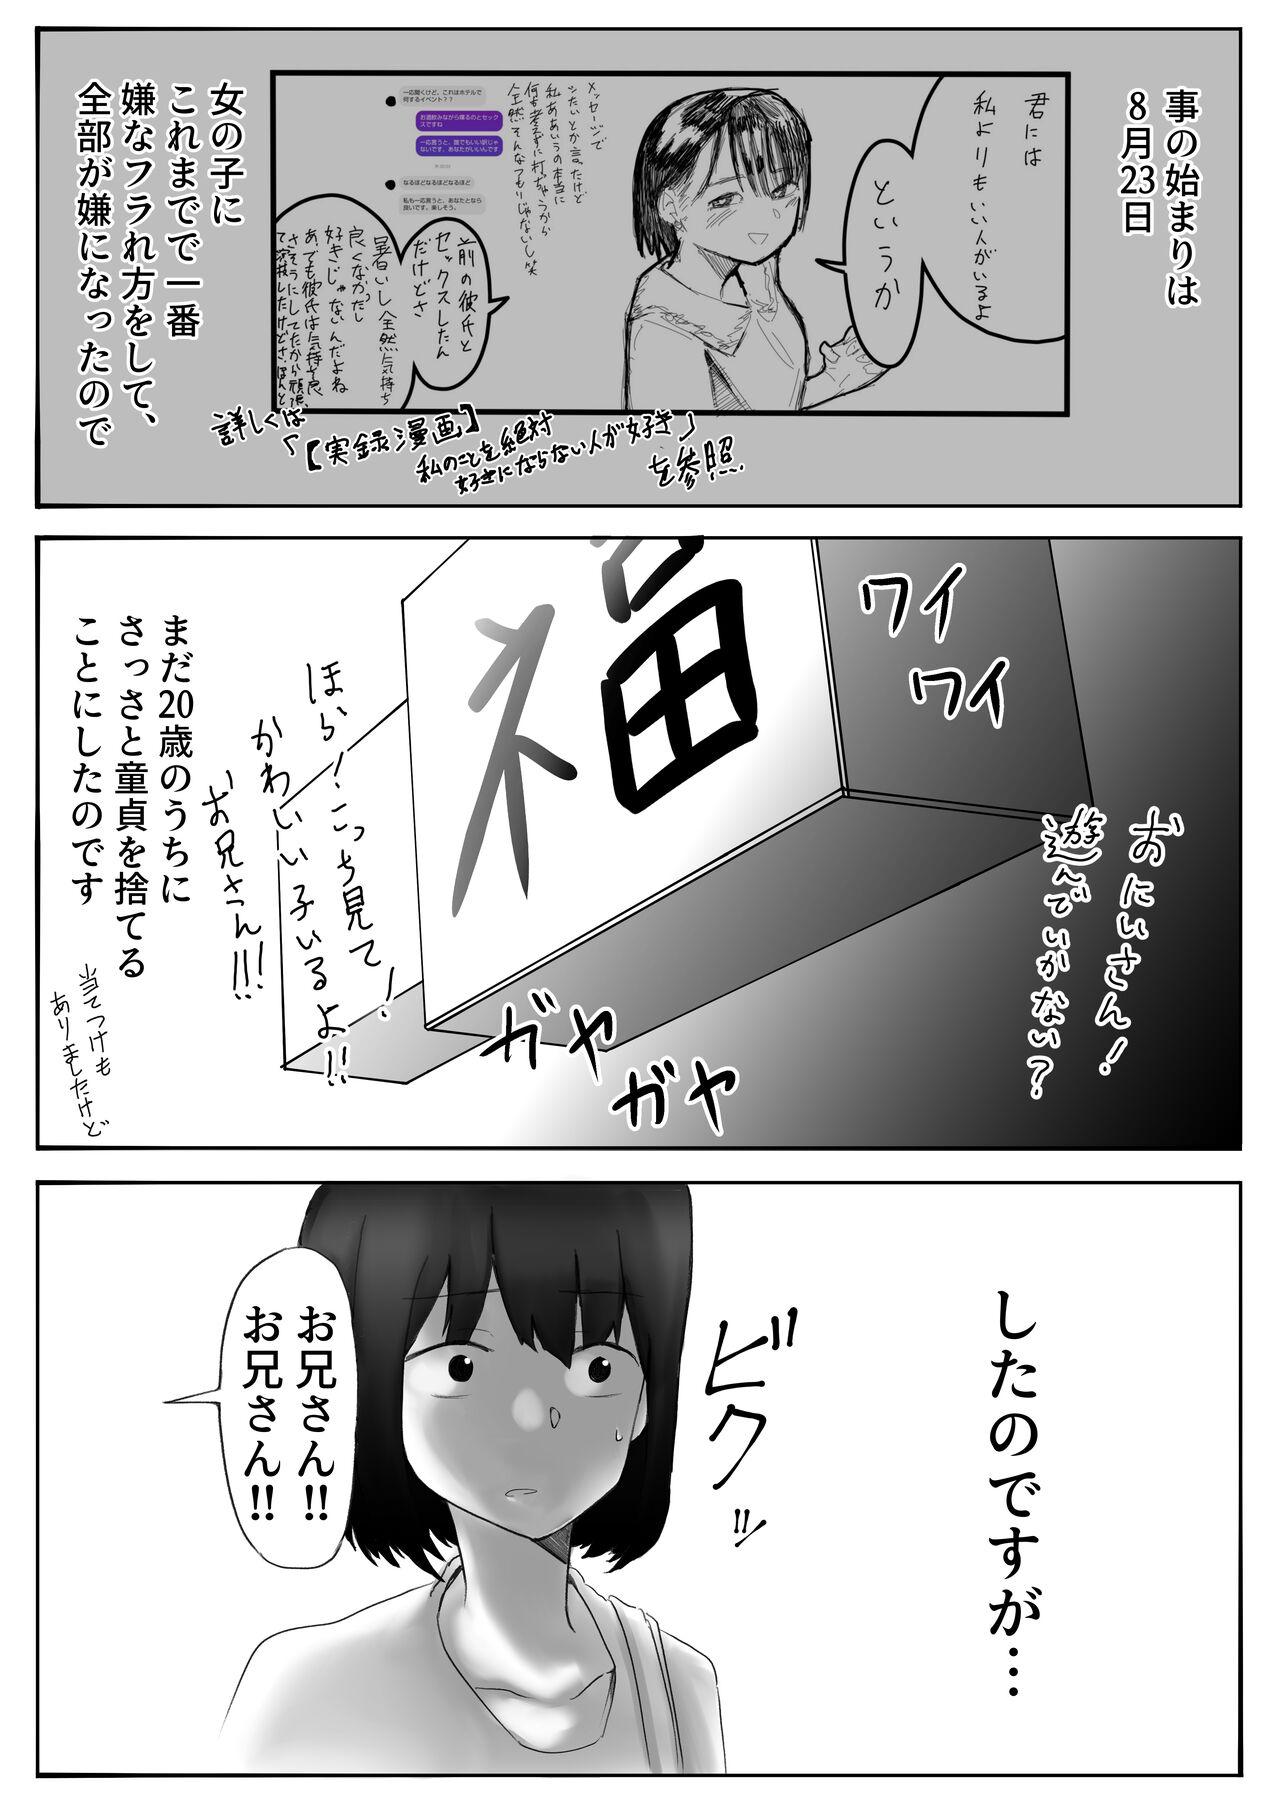 【風俗レポ漫画】飛田新地で童貞を捨てた話 1